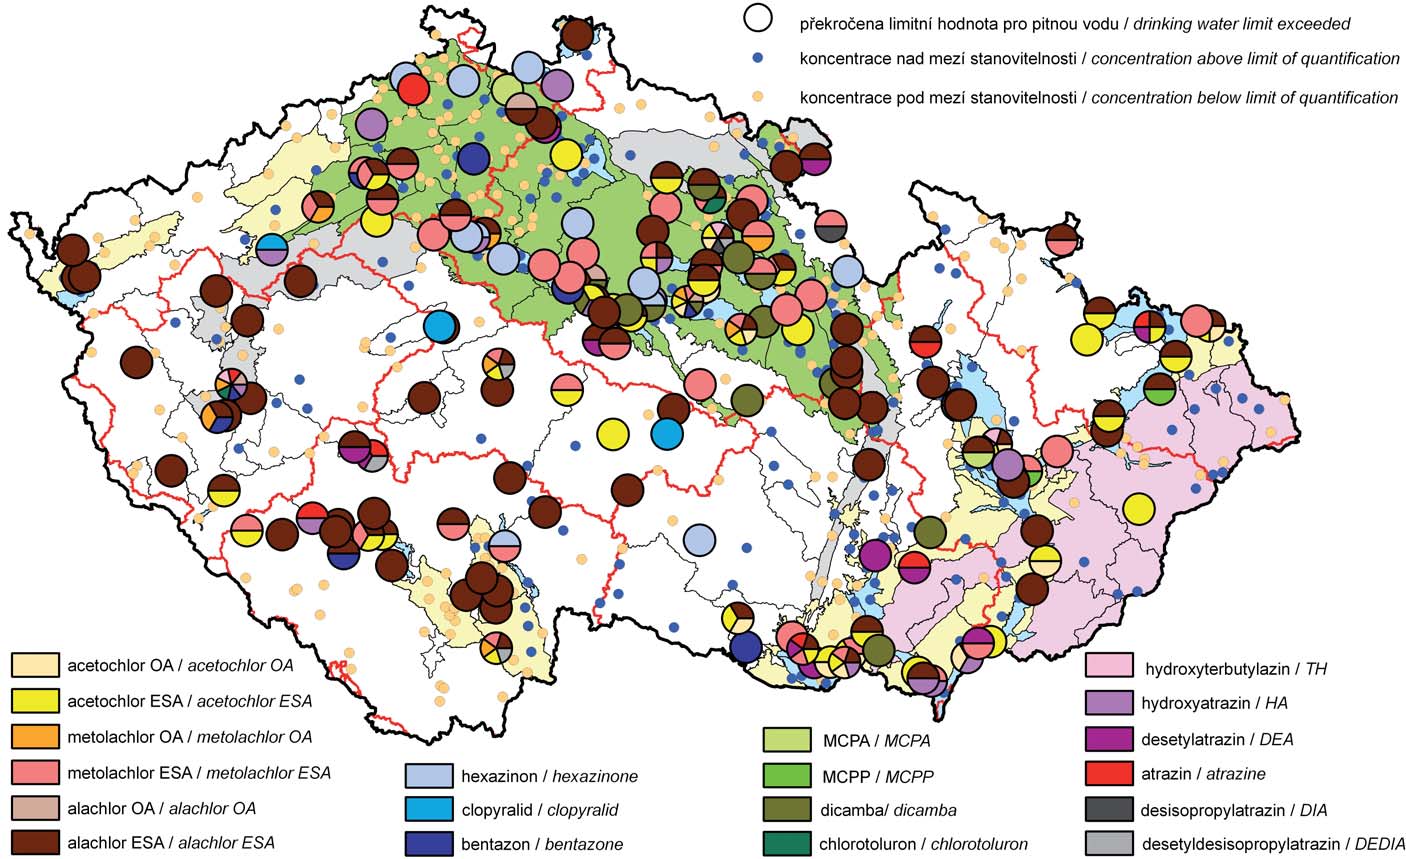 Mapa III.5 Výskyt zvýšených koncentrací pesticidů v podzemních vodách v roce 21 (látky, které překročily limit ve 2 a více objektech monitorovací sítě). Map III.